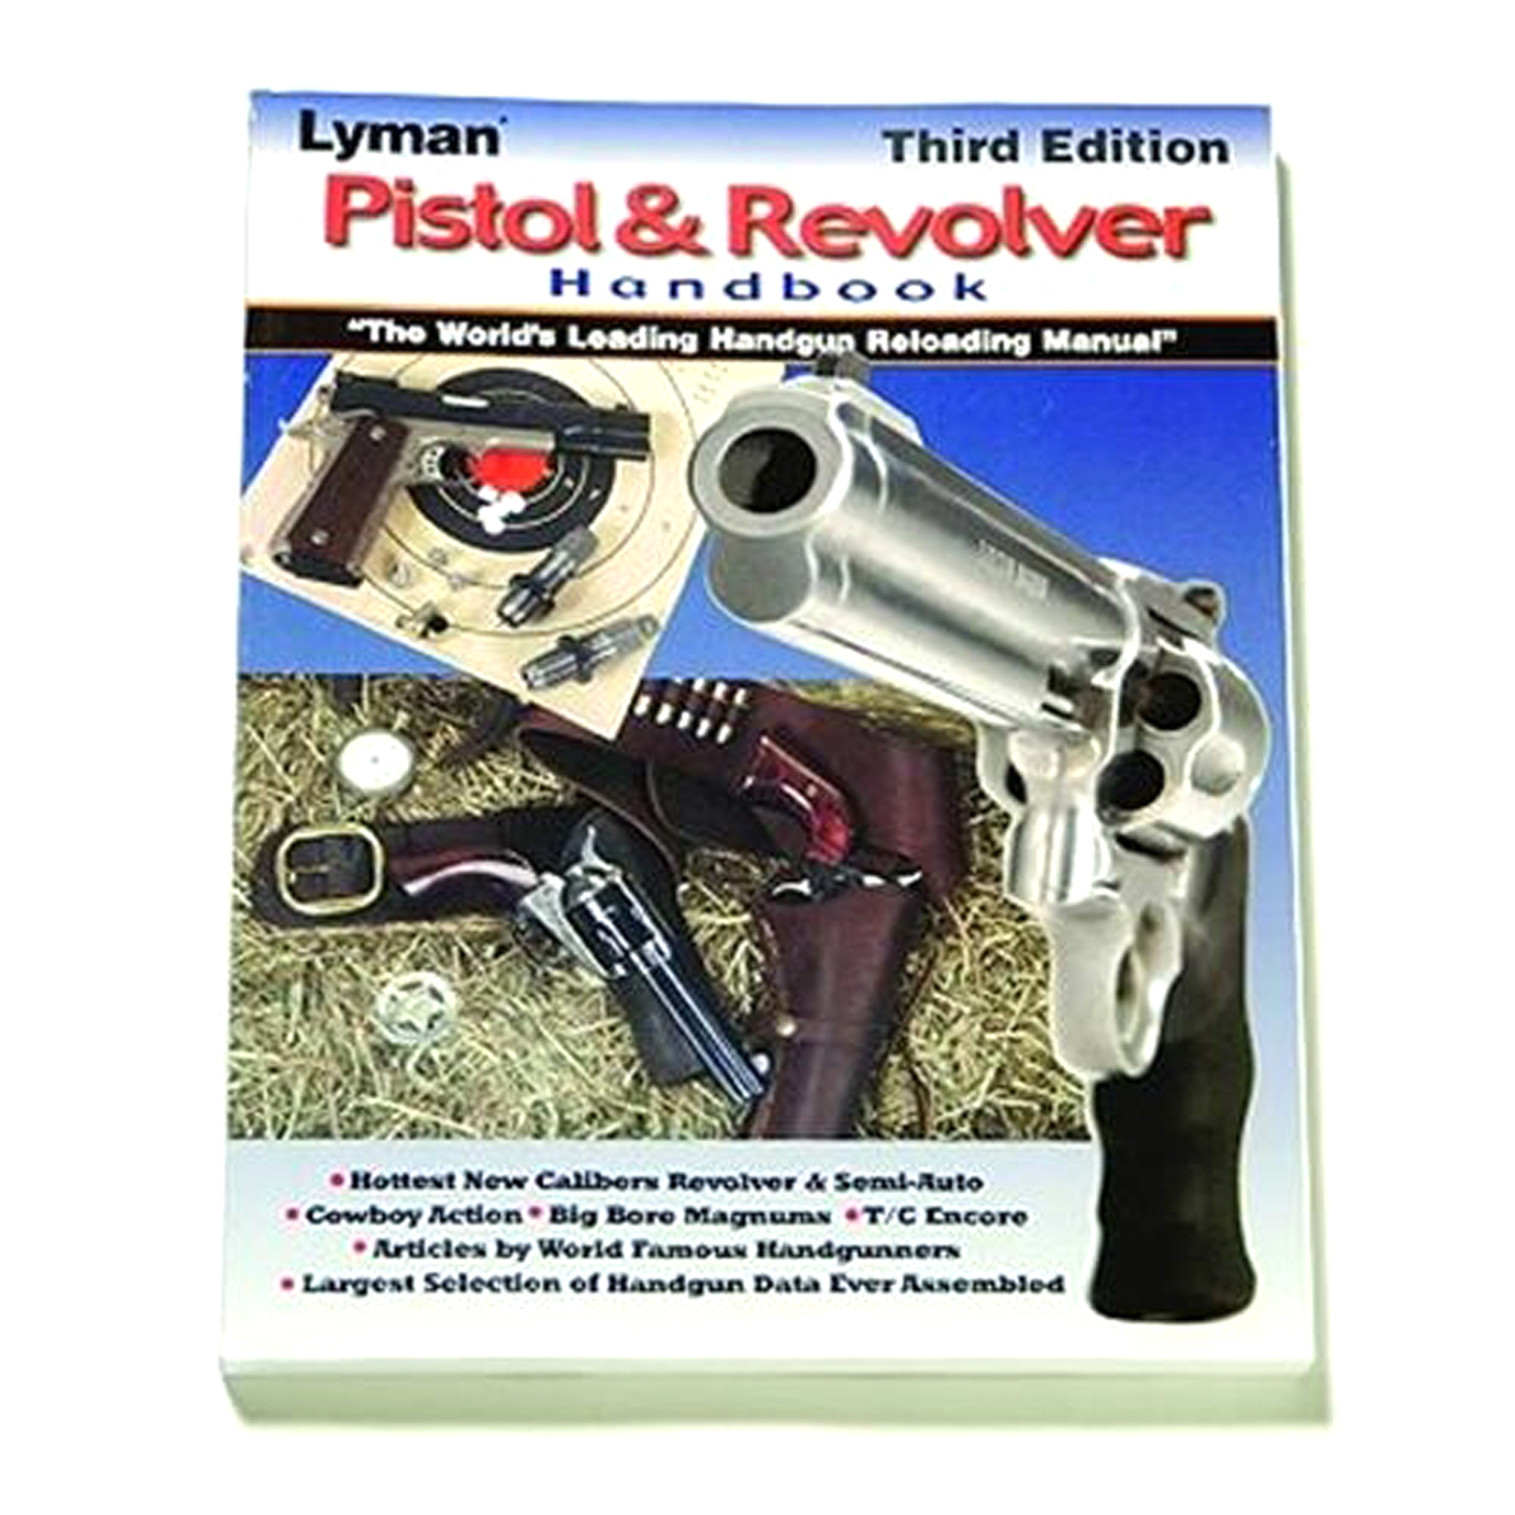 Pistol & Revolver Handbook 3Rd Edition